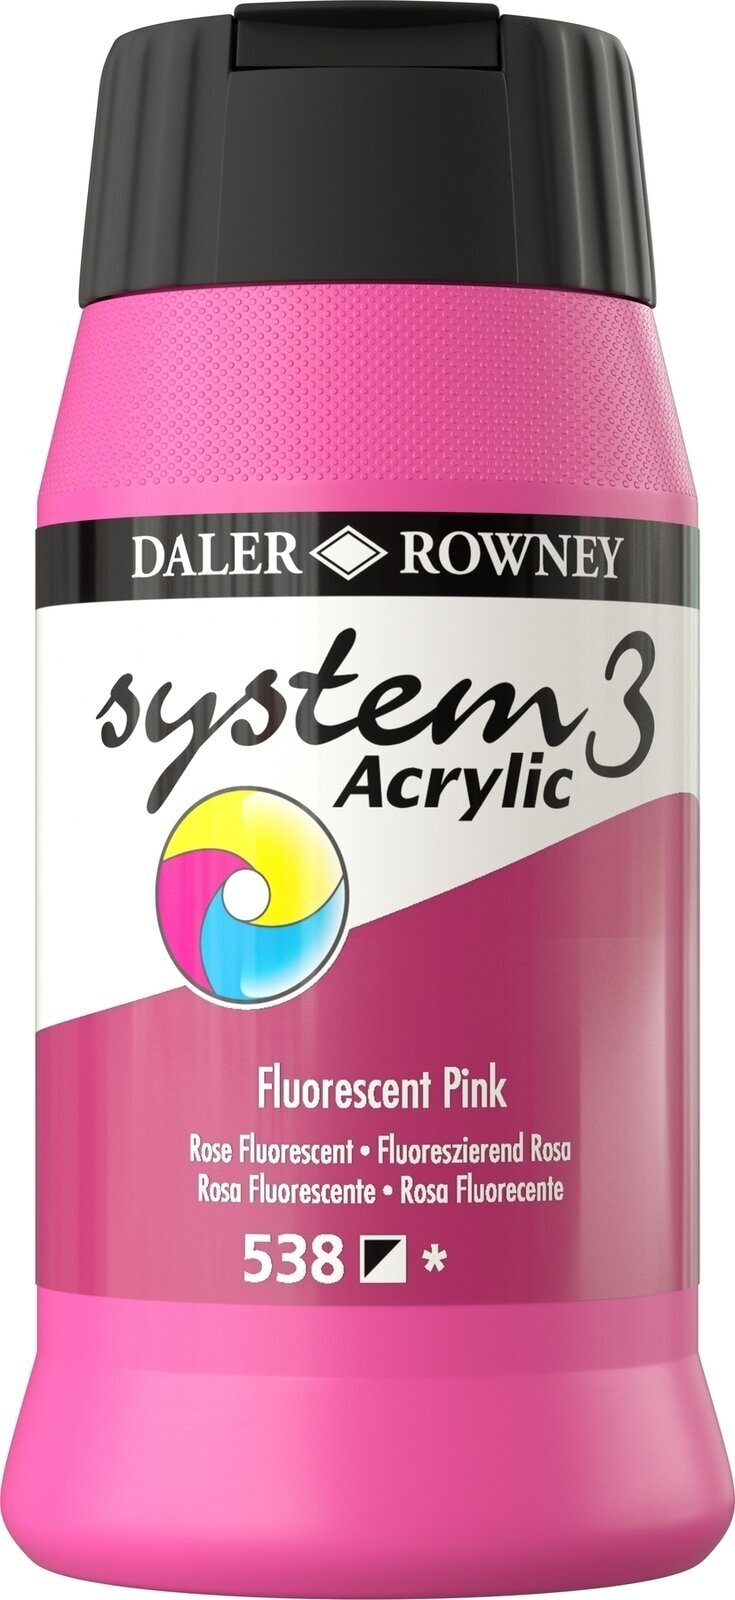 Akrylová barva Daler Rowney System3 Akrylová barva Fluorescent Pink 500 ml 1 ks